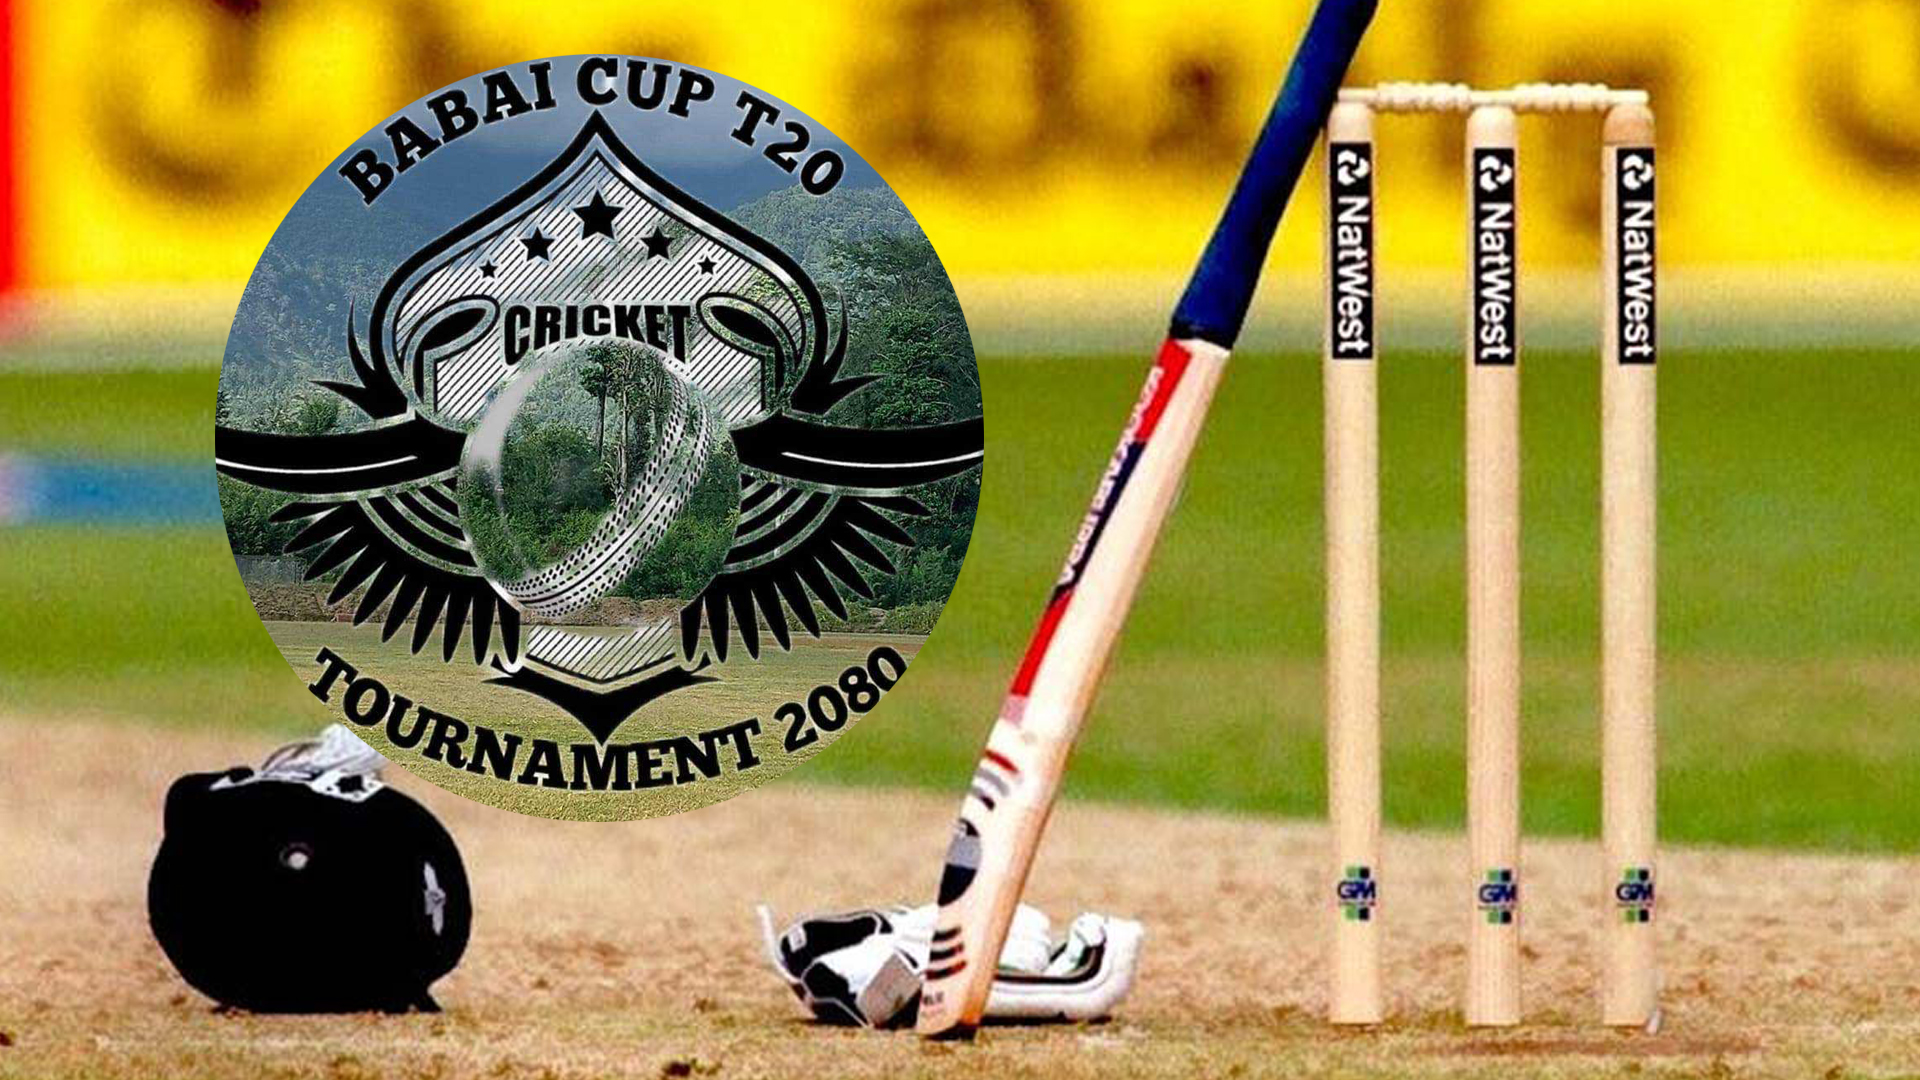 बबई गाउँपालिकाकाे हंसपुरमा पहिलो पटक बबई कप टि २० क्रिकेट प्रतियोगिता हुने